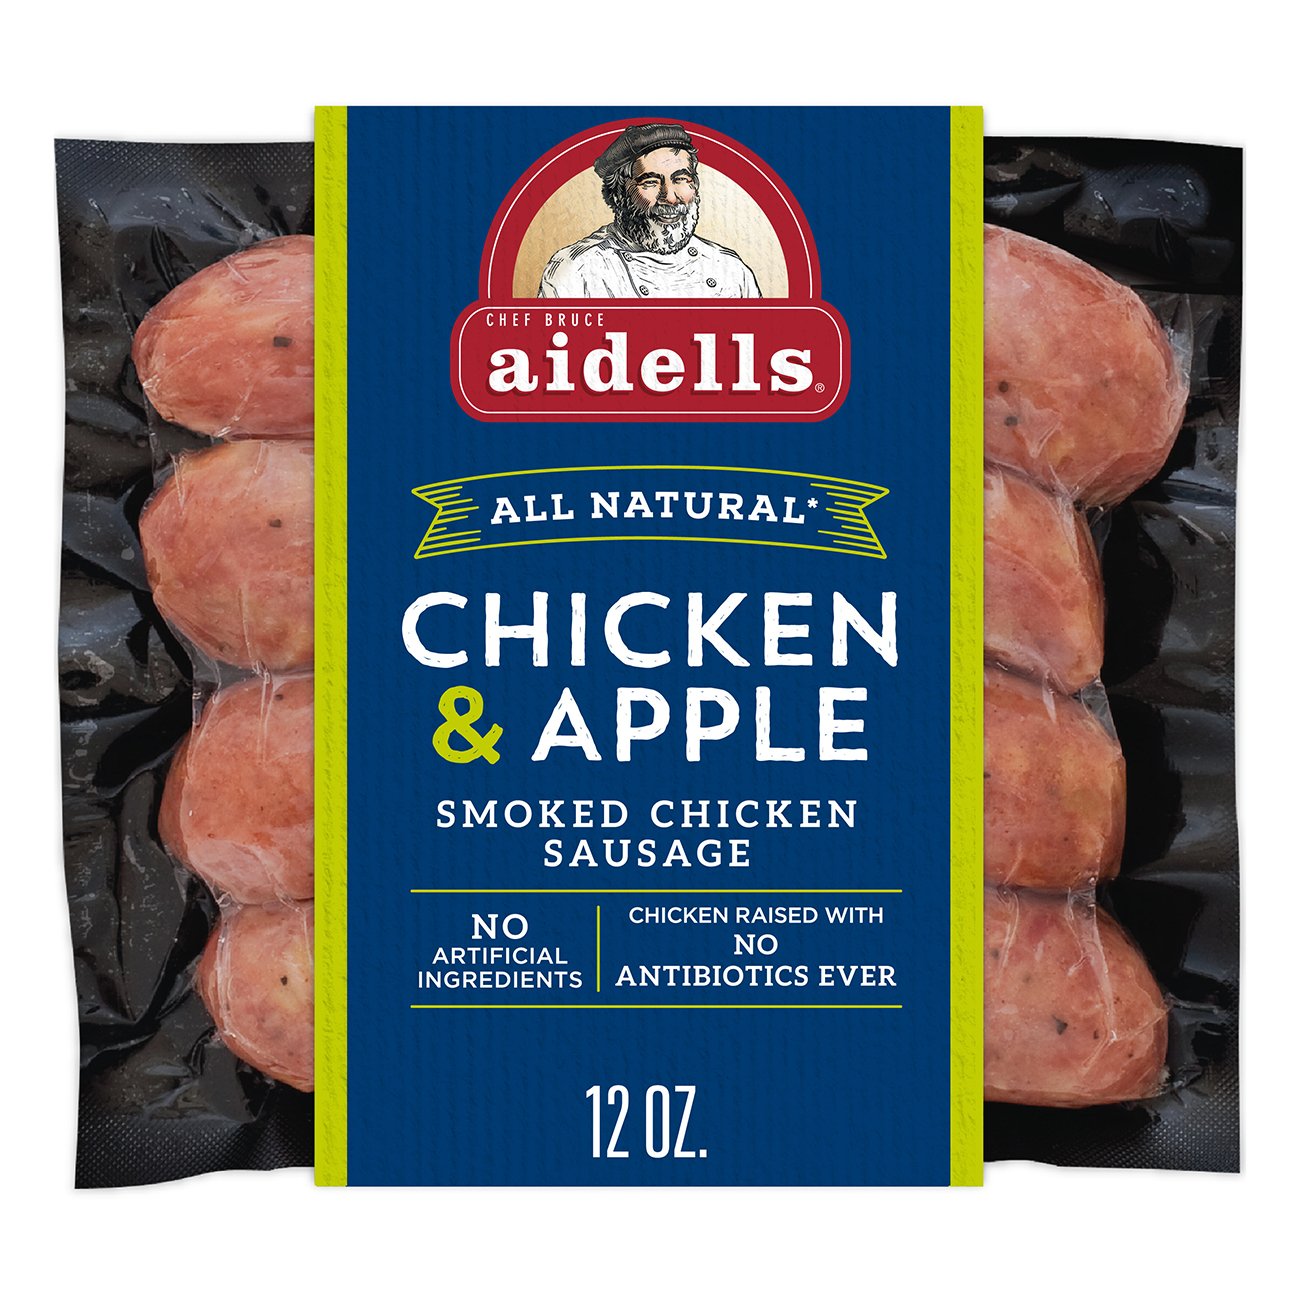 Aidells Smoked Chicken Sausage Chicken Apple Shop Sausage At H E B